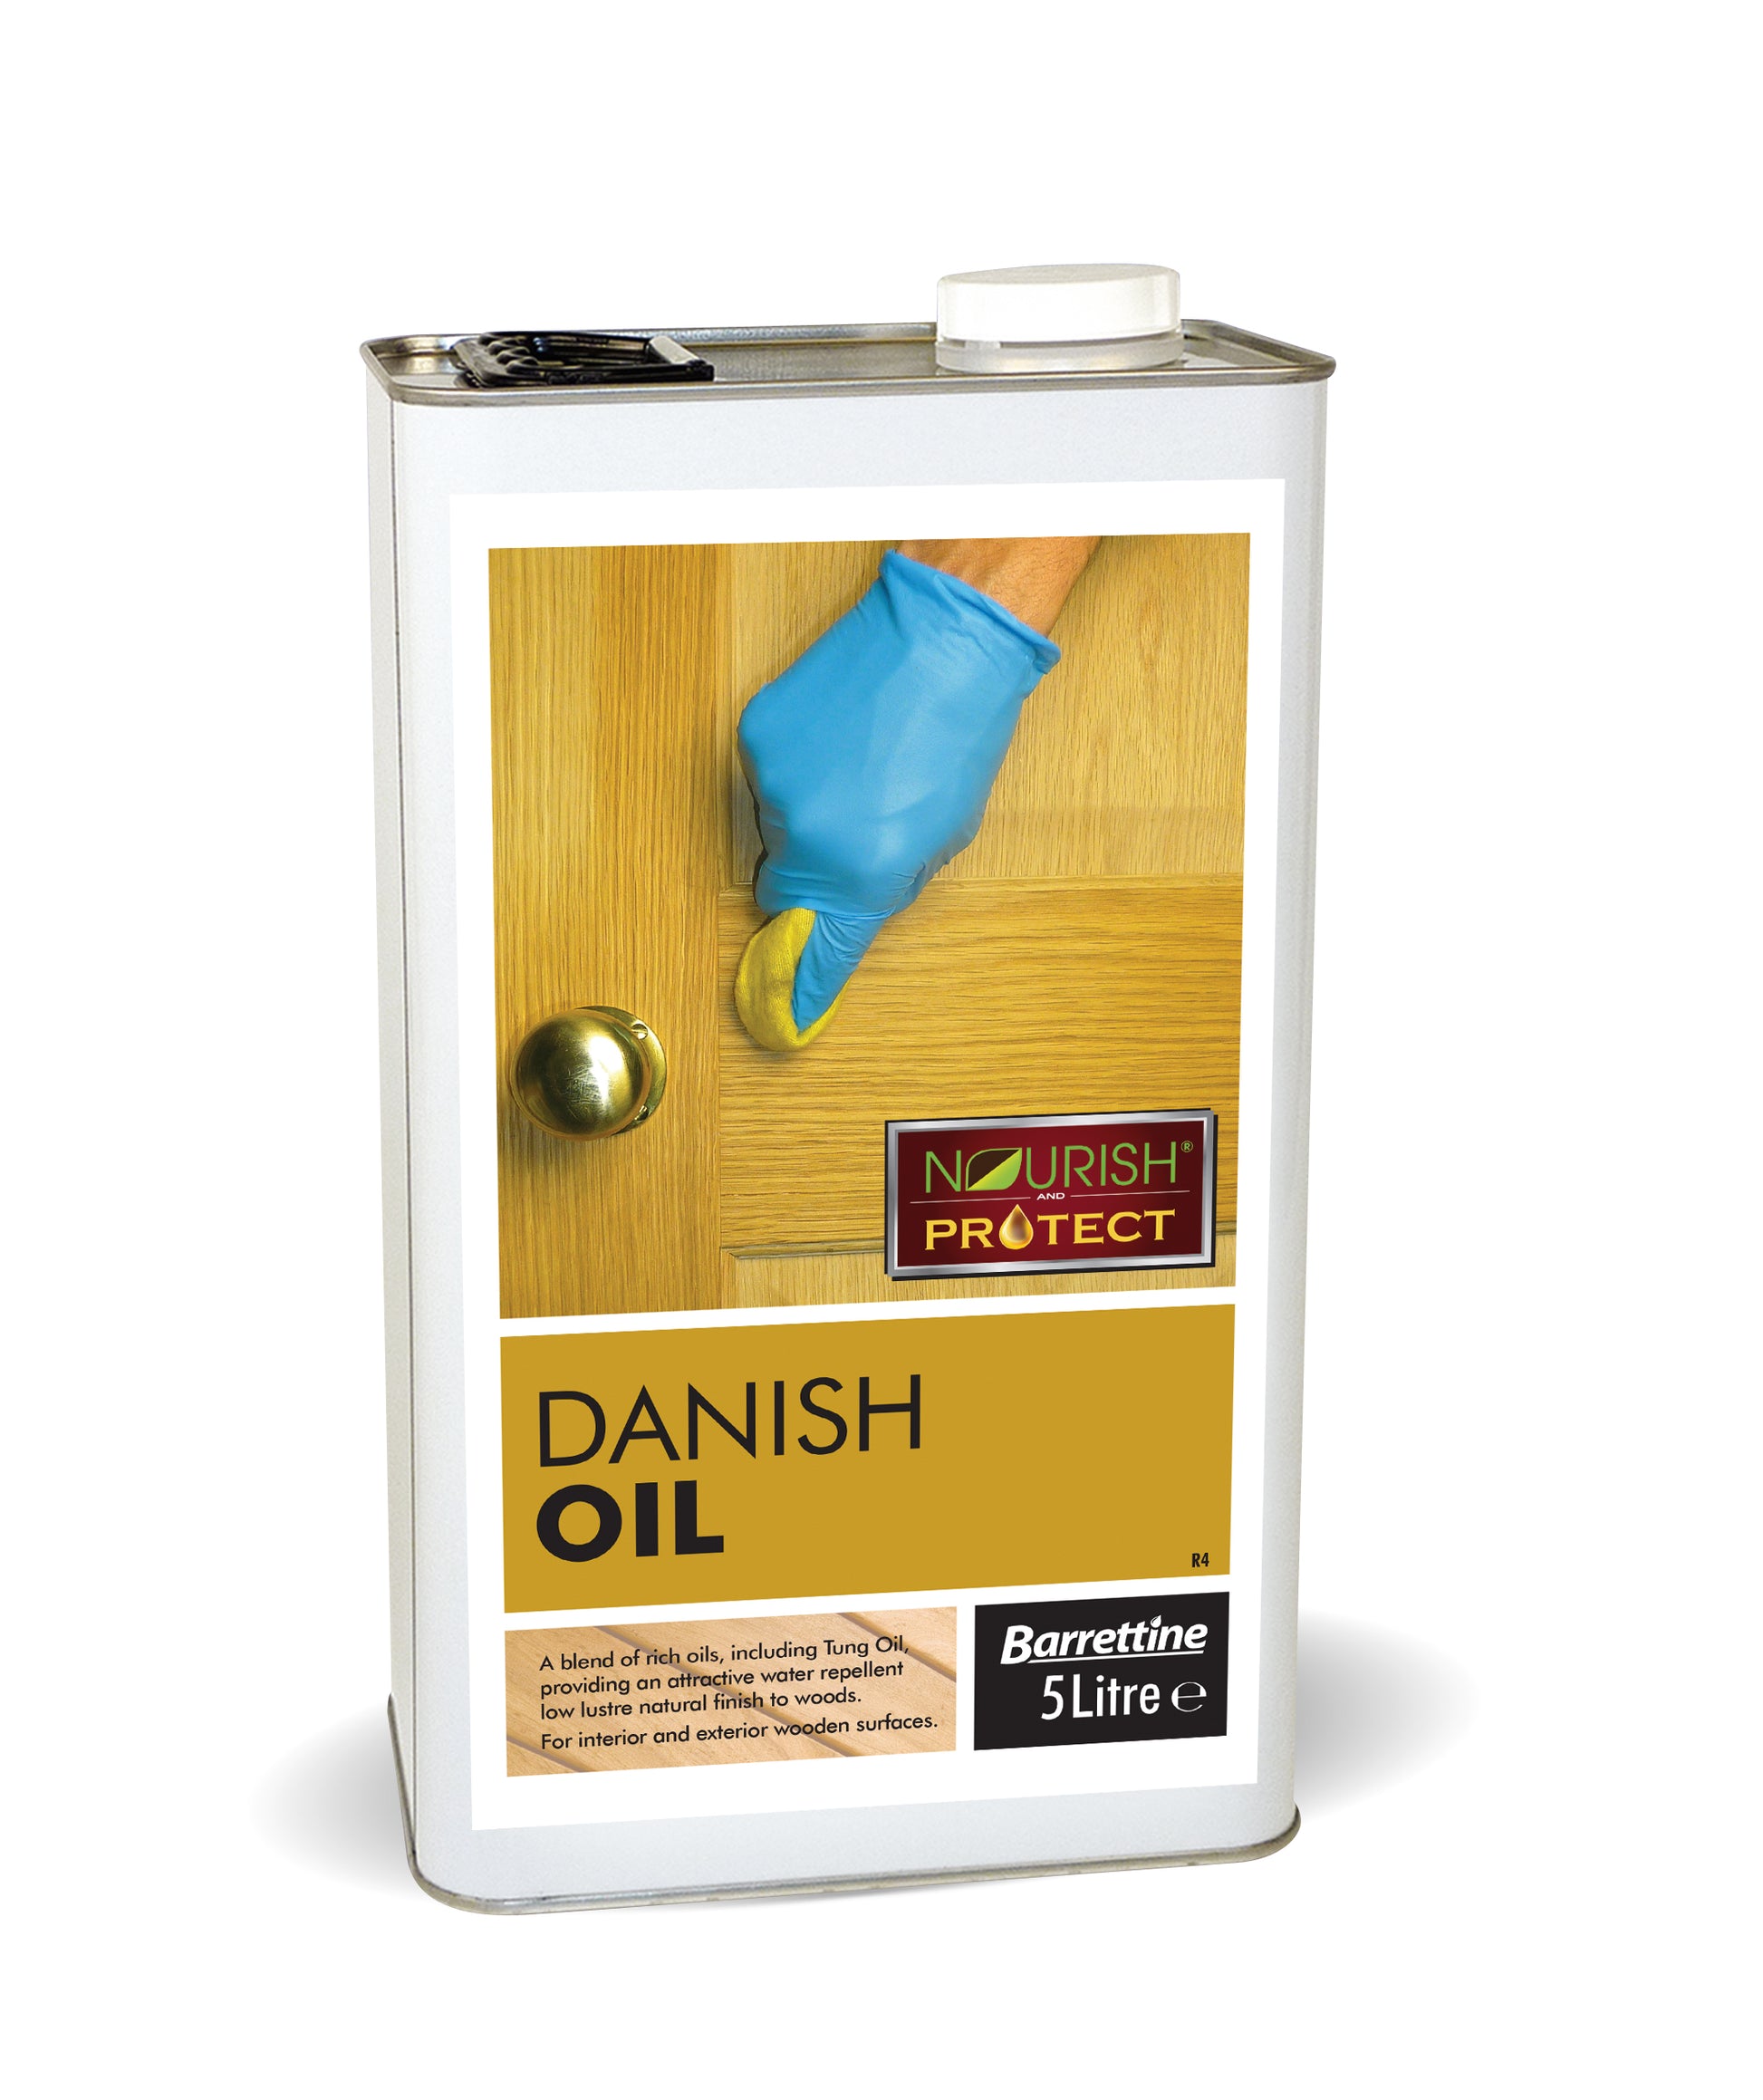 5 Litre Danish Oil for wood and worktops natural blend of food safe oils